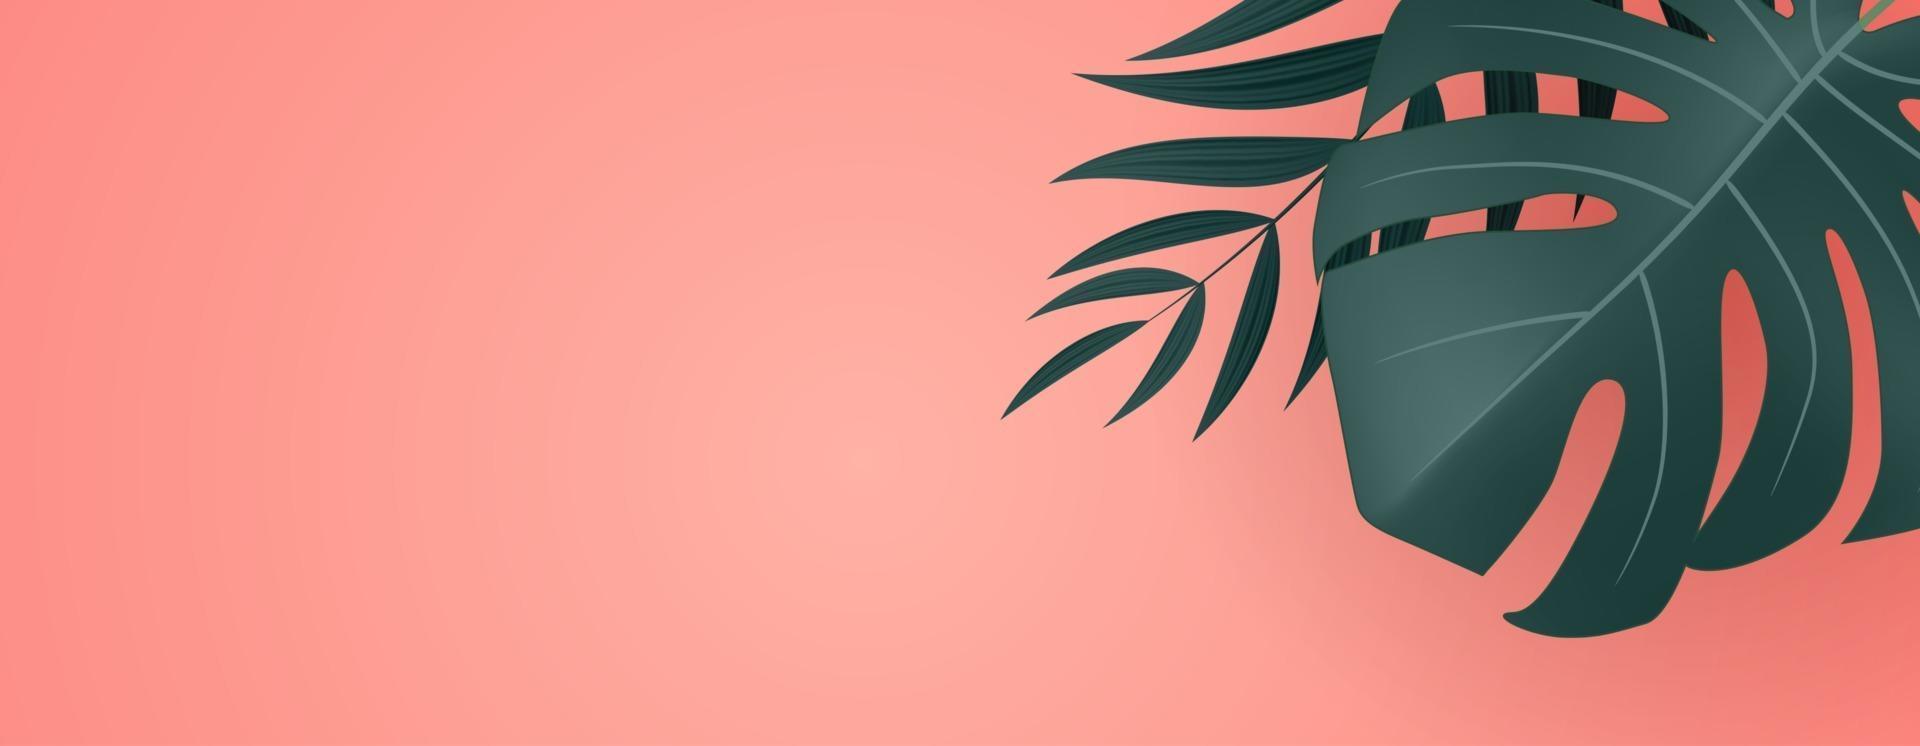 Fondo tropical de hoja de palma verde y oro realista natural. ilustración vectorial eps10 vector